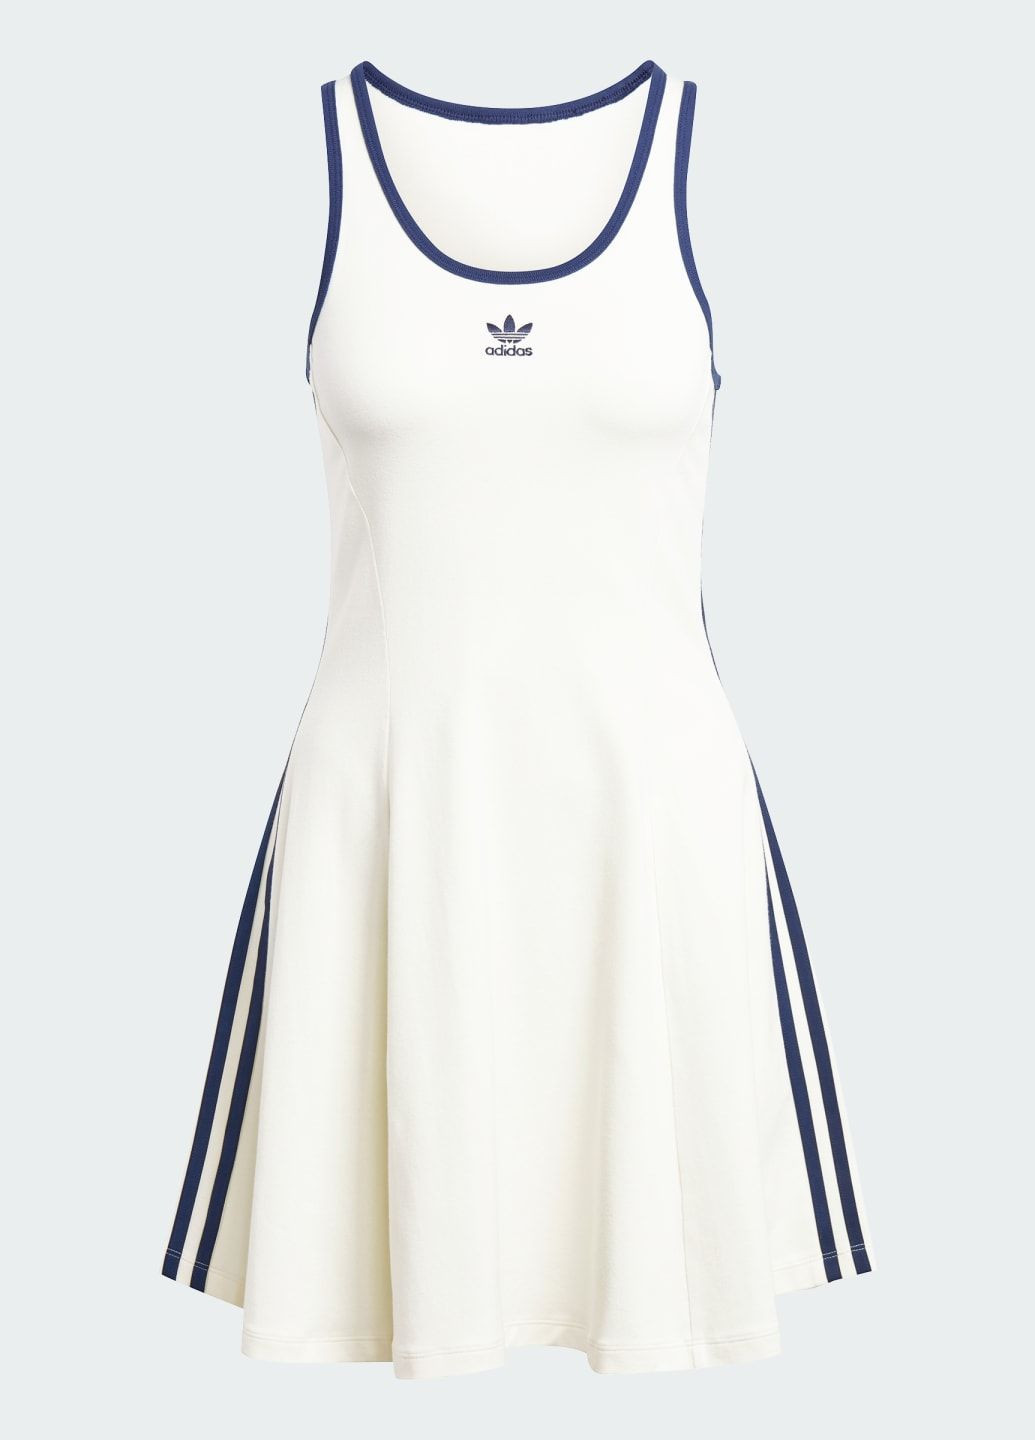 Белое спортивное платье tank adidas с логотипом